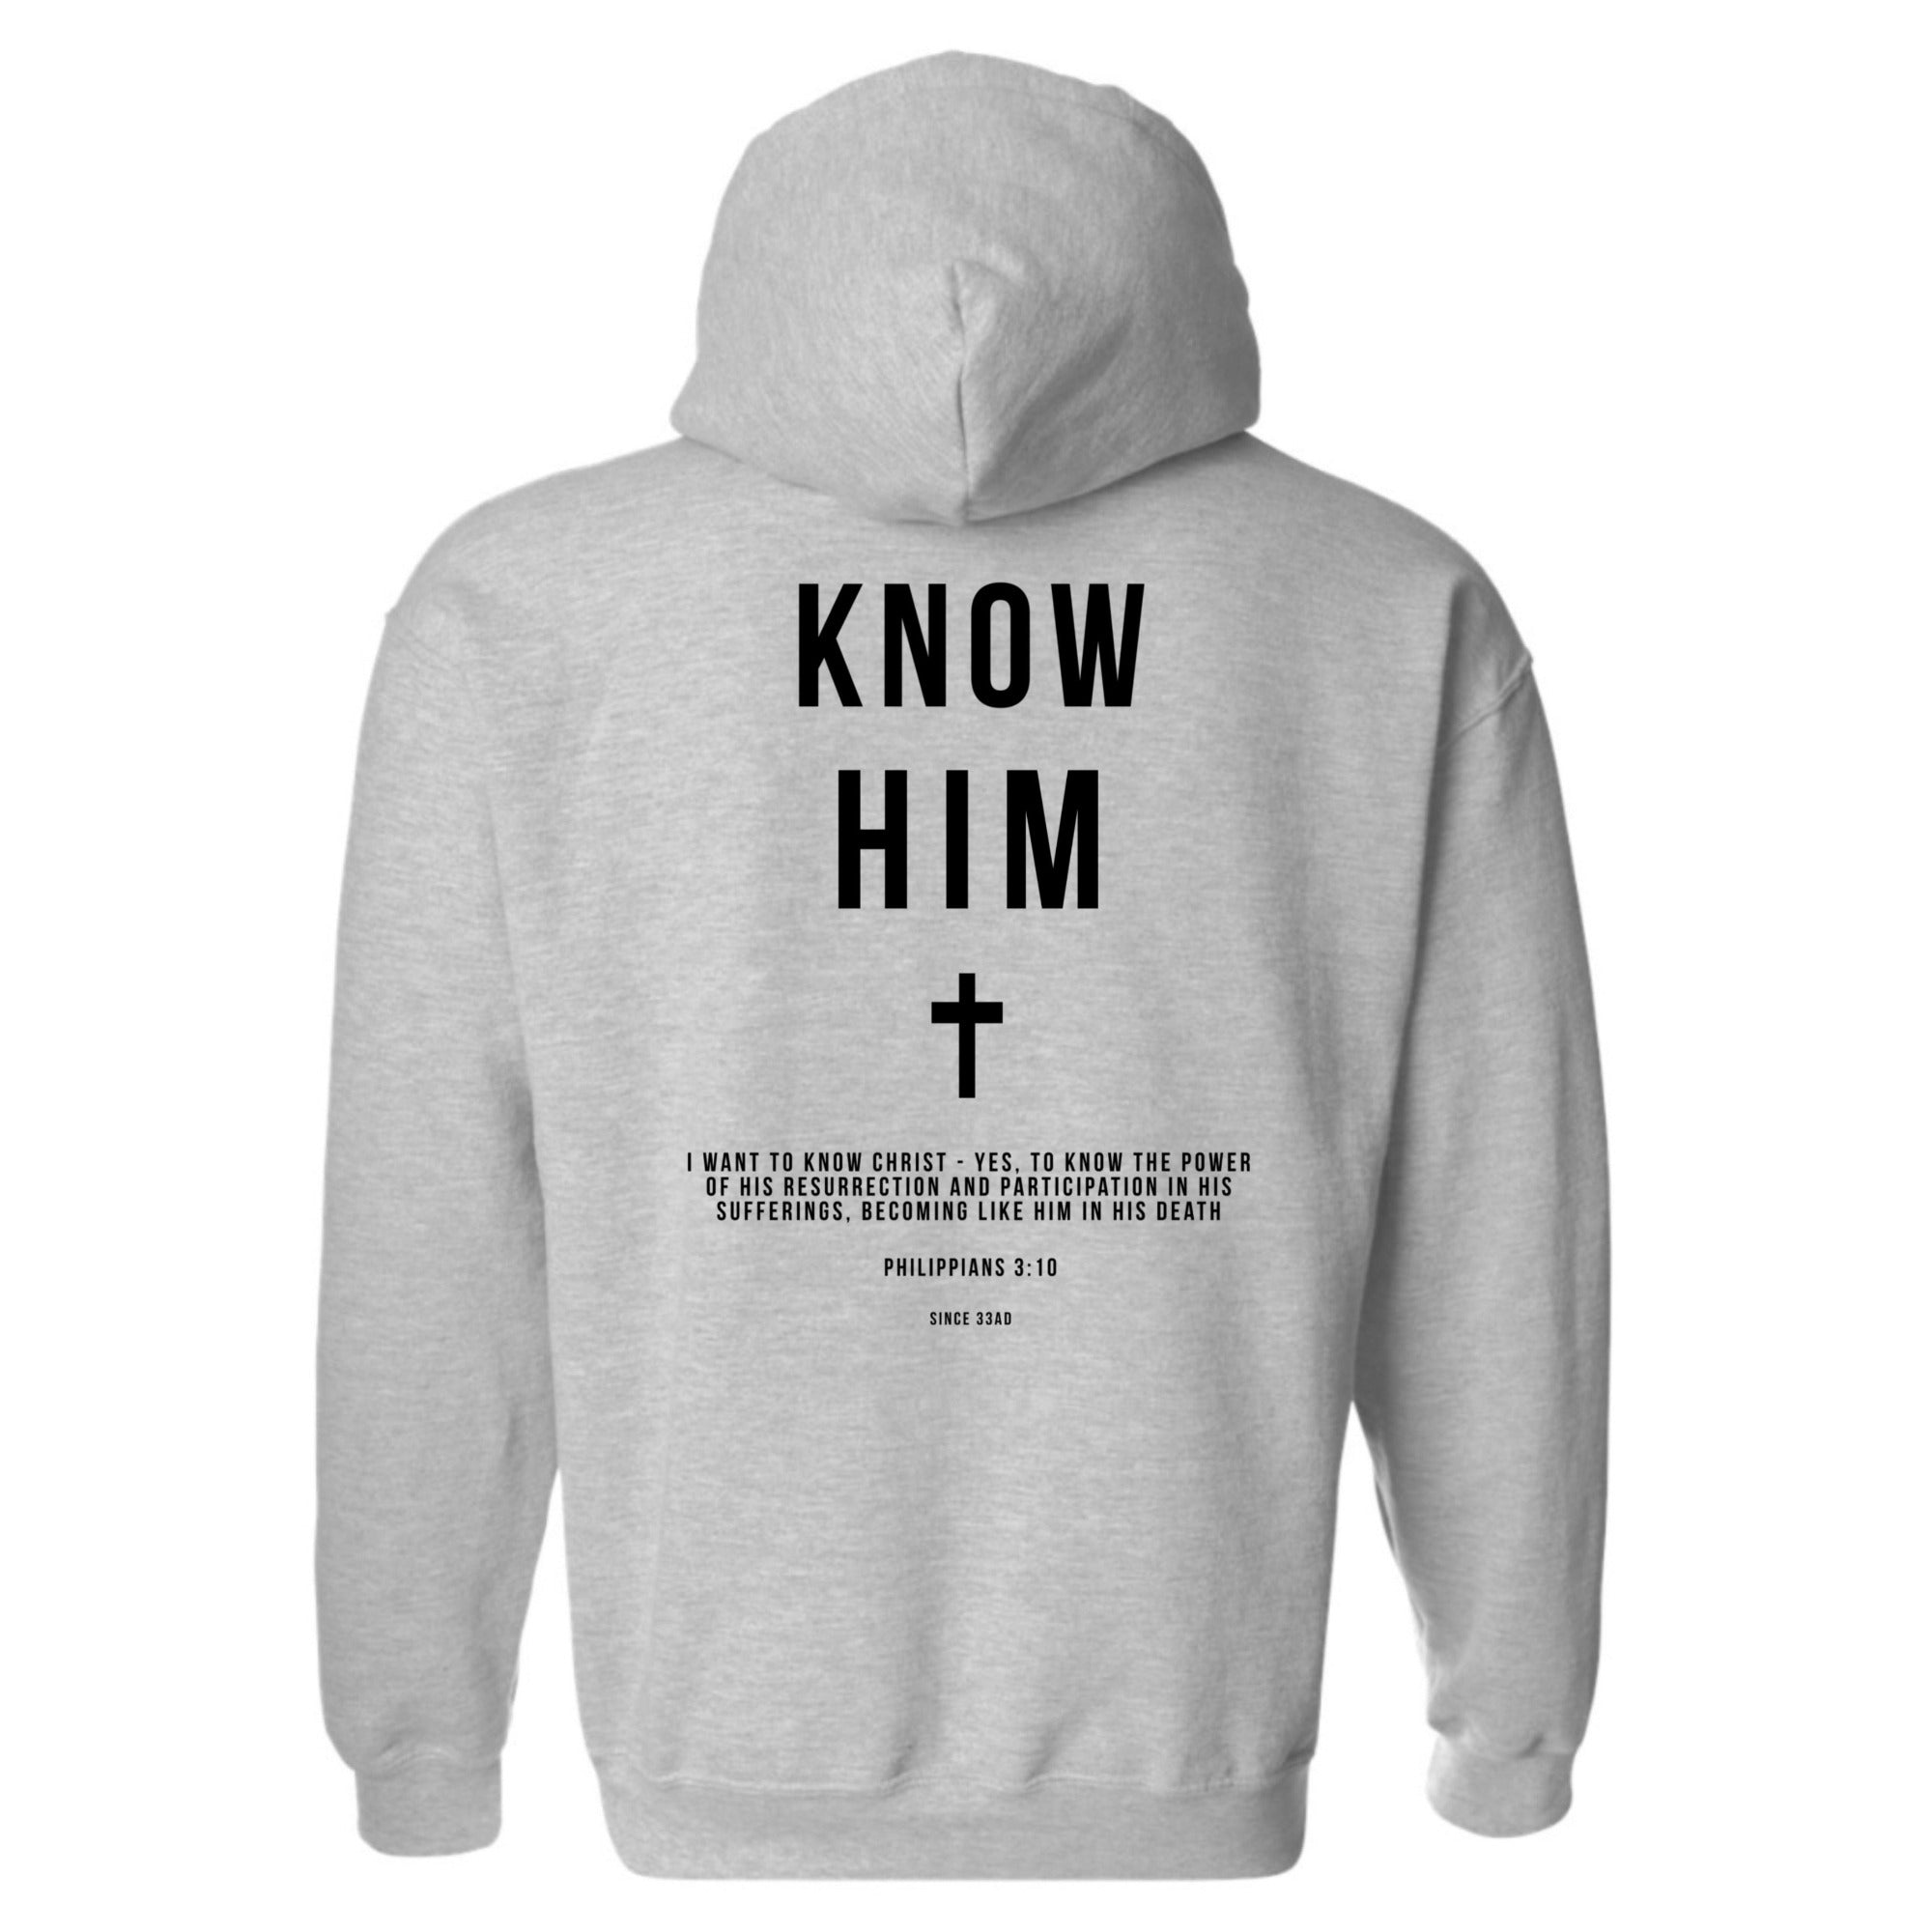 Know Him (Sports Grey) - Hoodie